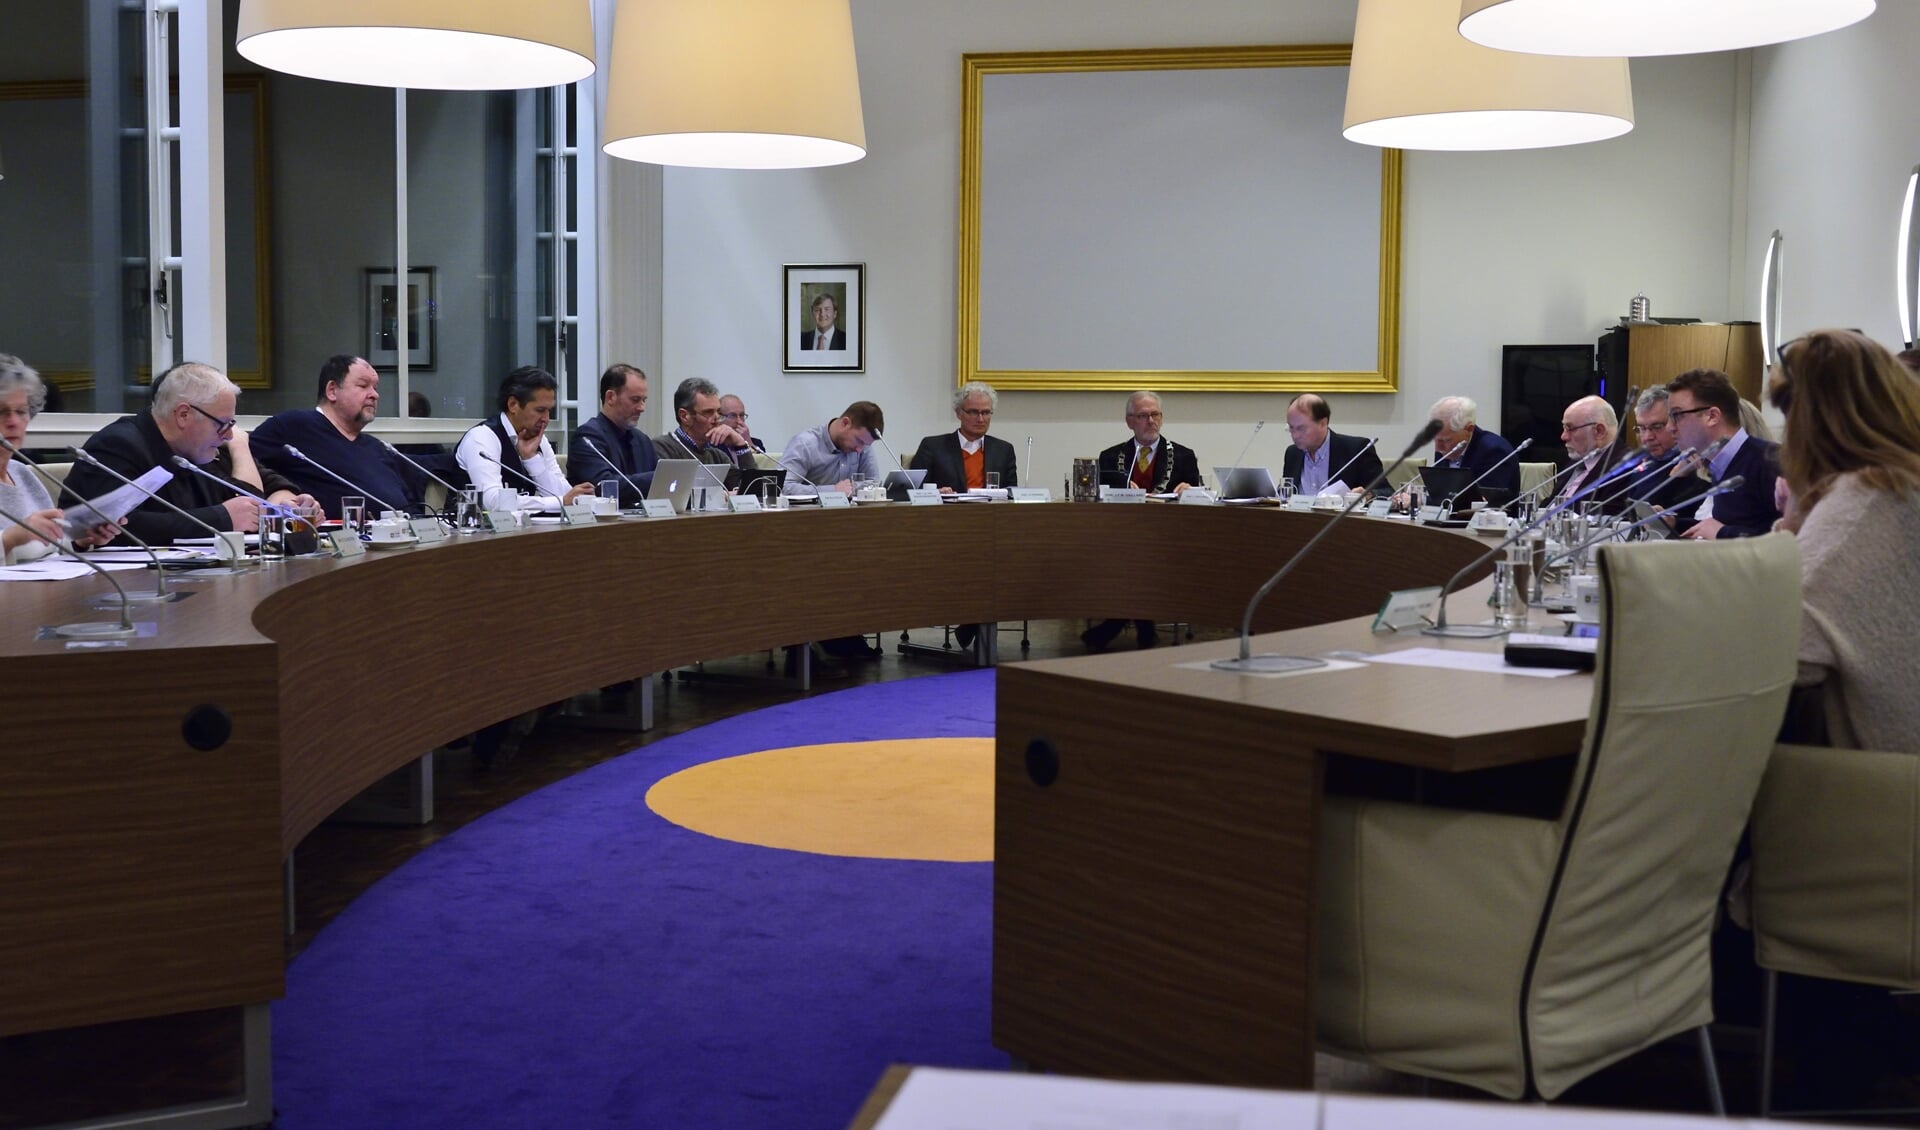 De raad bijeen, straks met een nieuwe wethouder voor PvdA/GroenLinks